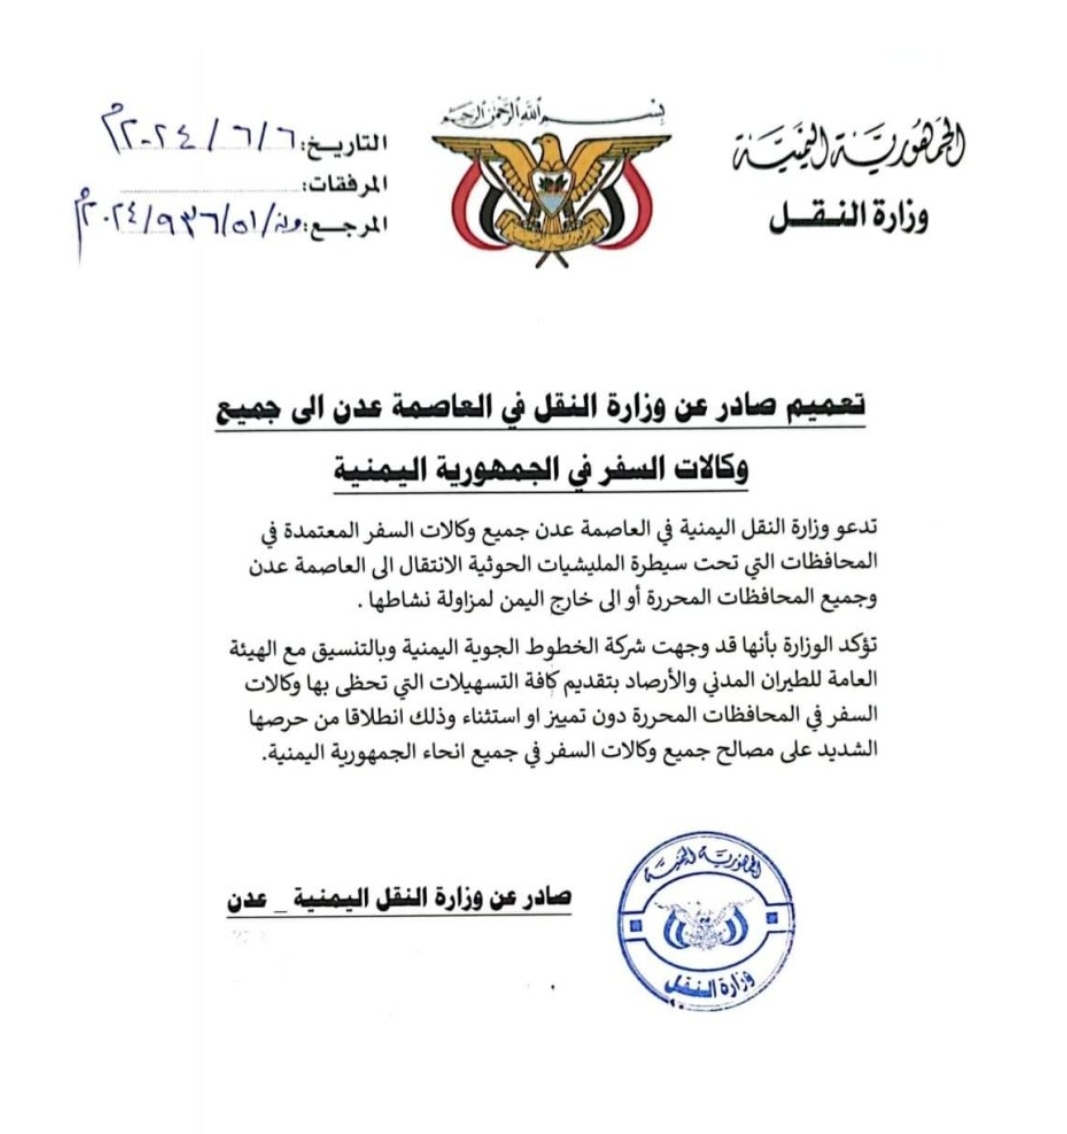 وزارة النقل اليمنية تصدر تعميم هام لوكالات السفر